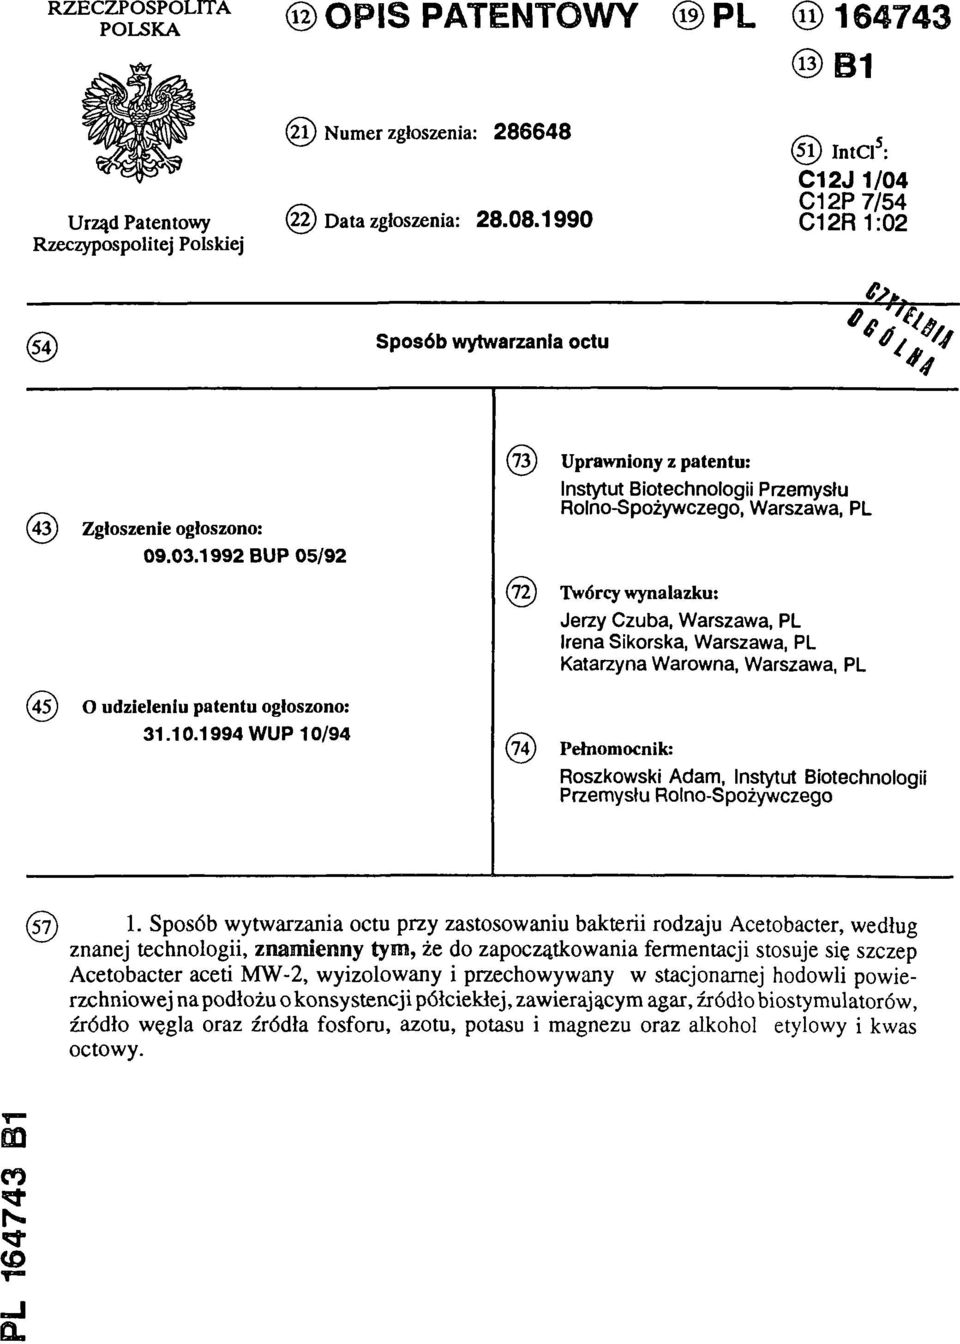 1992 BUP 05/92 (73) Uprawniony z patentu: Instytut Biotechnologii Przemysłu Rolno-Spożywczego, Warszawa, PL (72) Twórcy wynalazku: Jerzy Czuba, Warszawa, PL Irena Sikorska, Warszawa, PL Katarzyna